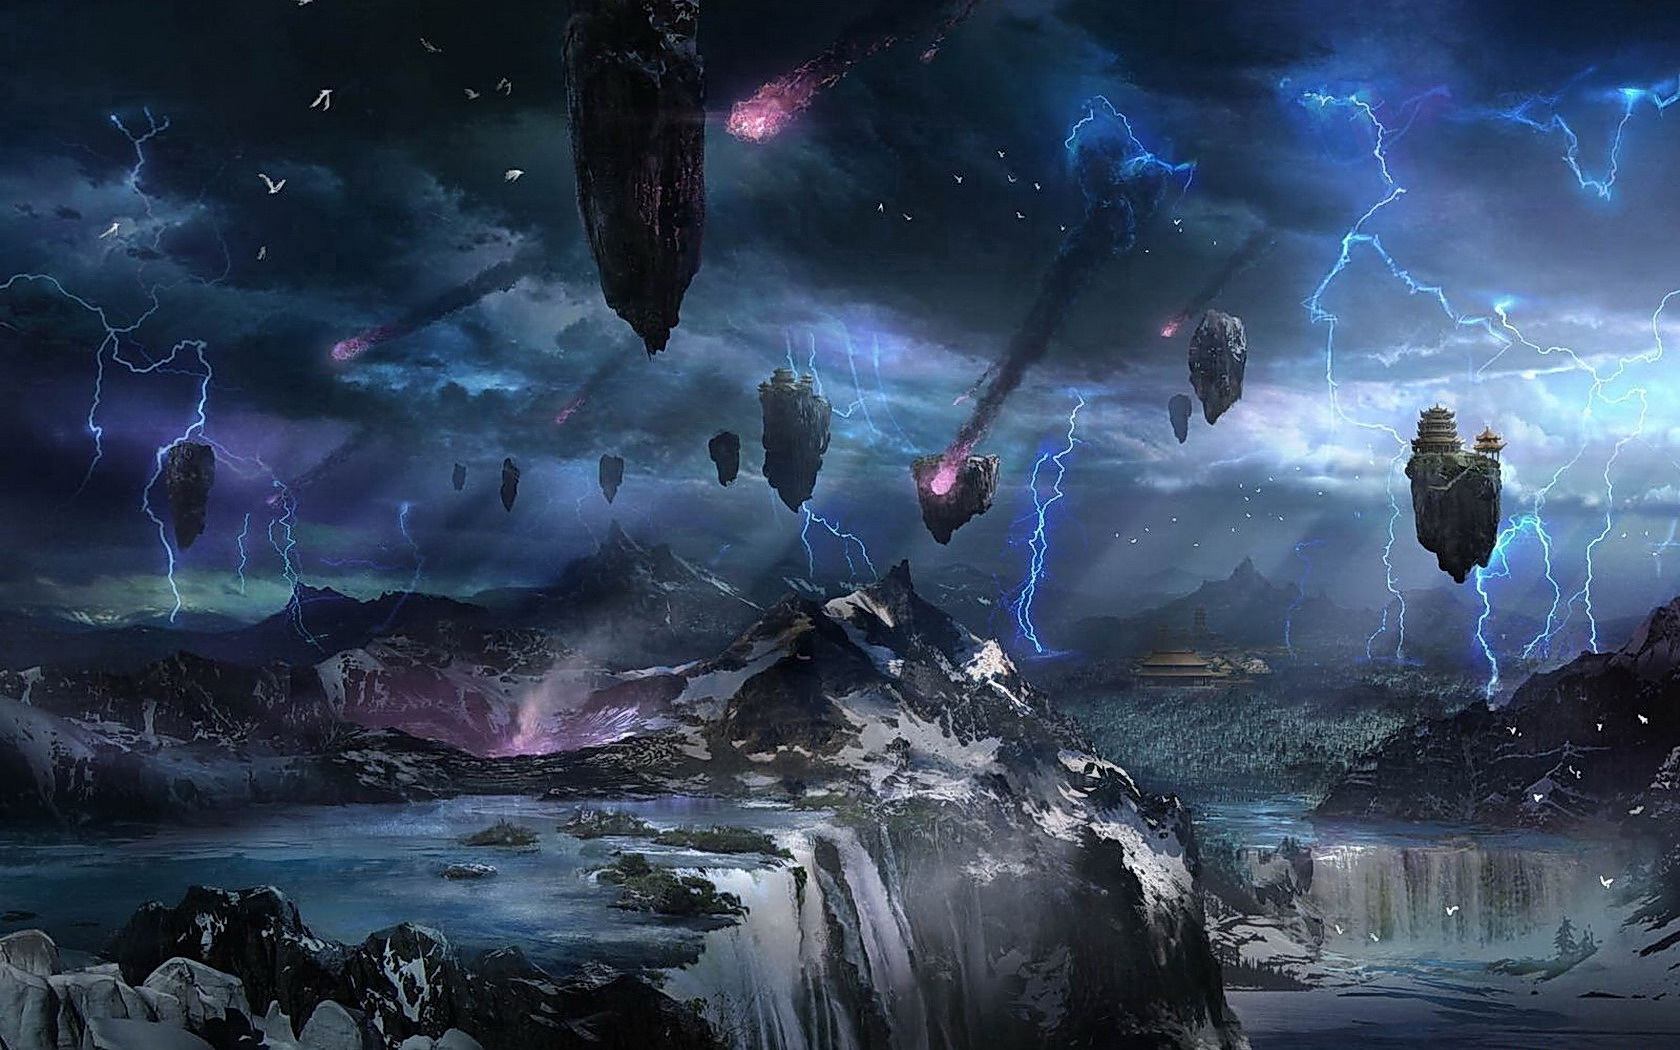 Free download wallpaper Landscape, Lightning, Space, Sci Fi, Storm, Destruction, Floating Island on your PC desktop